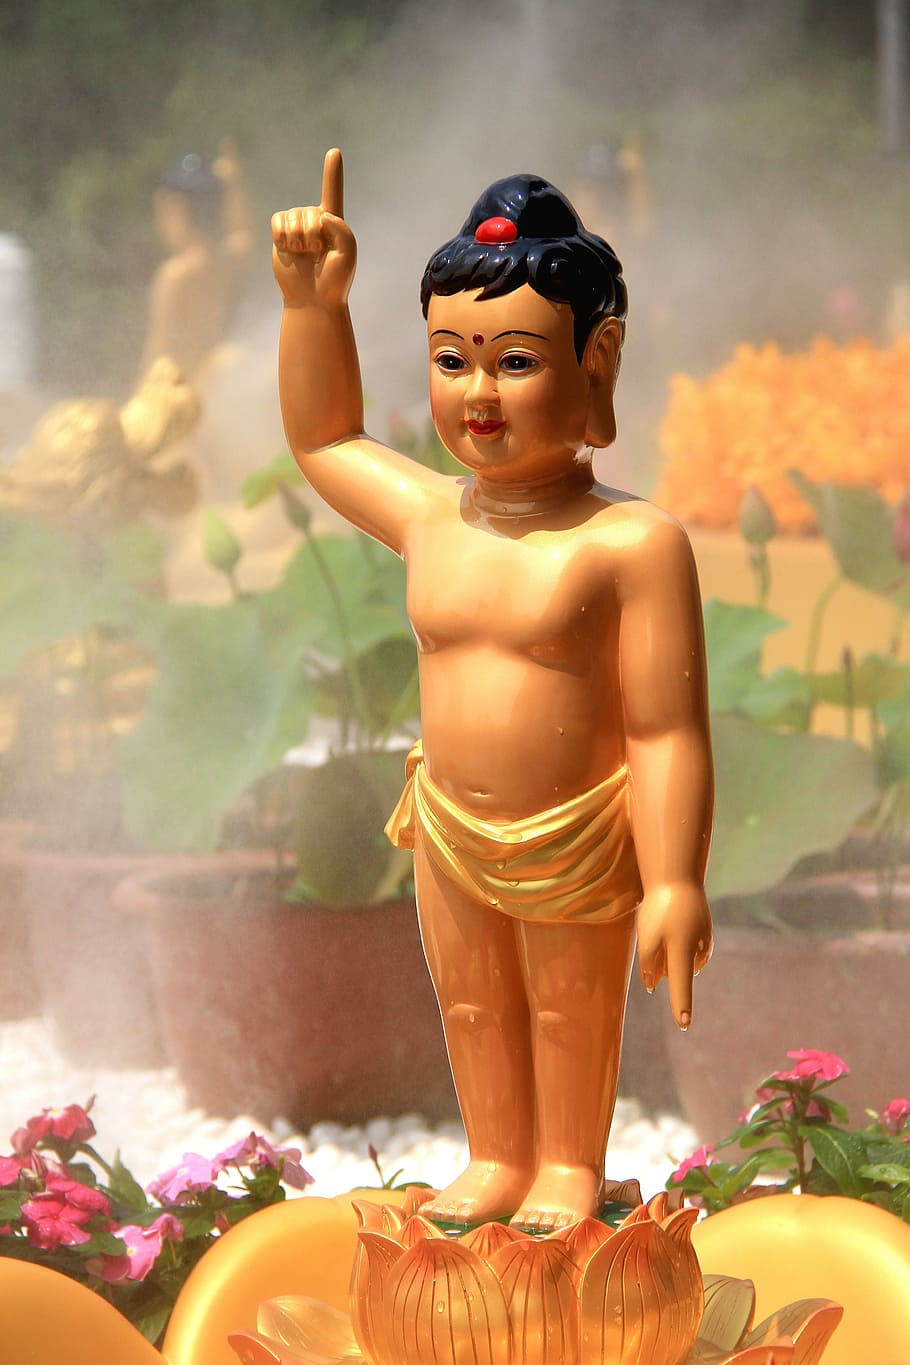 Siddhartha, Prince, Bath, Buddha, Buddhism, prince bath buddha, buddha's birthday festival, water spray, flower, statue